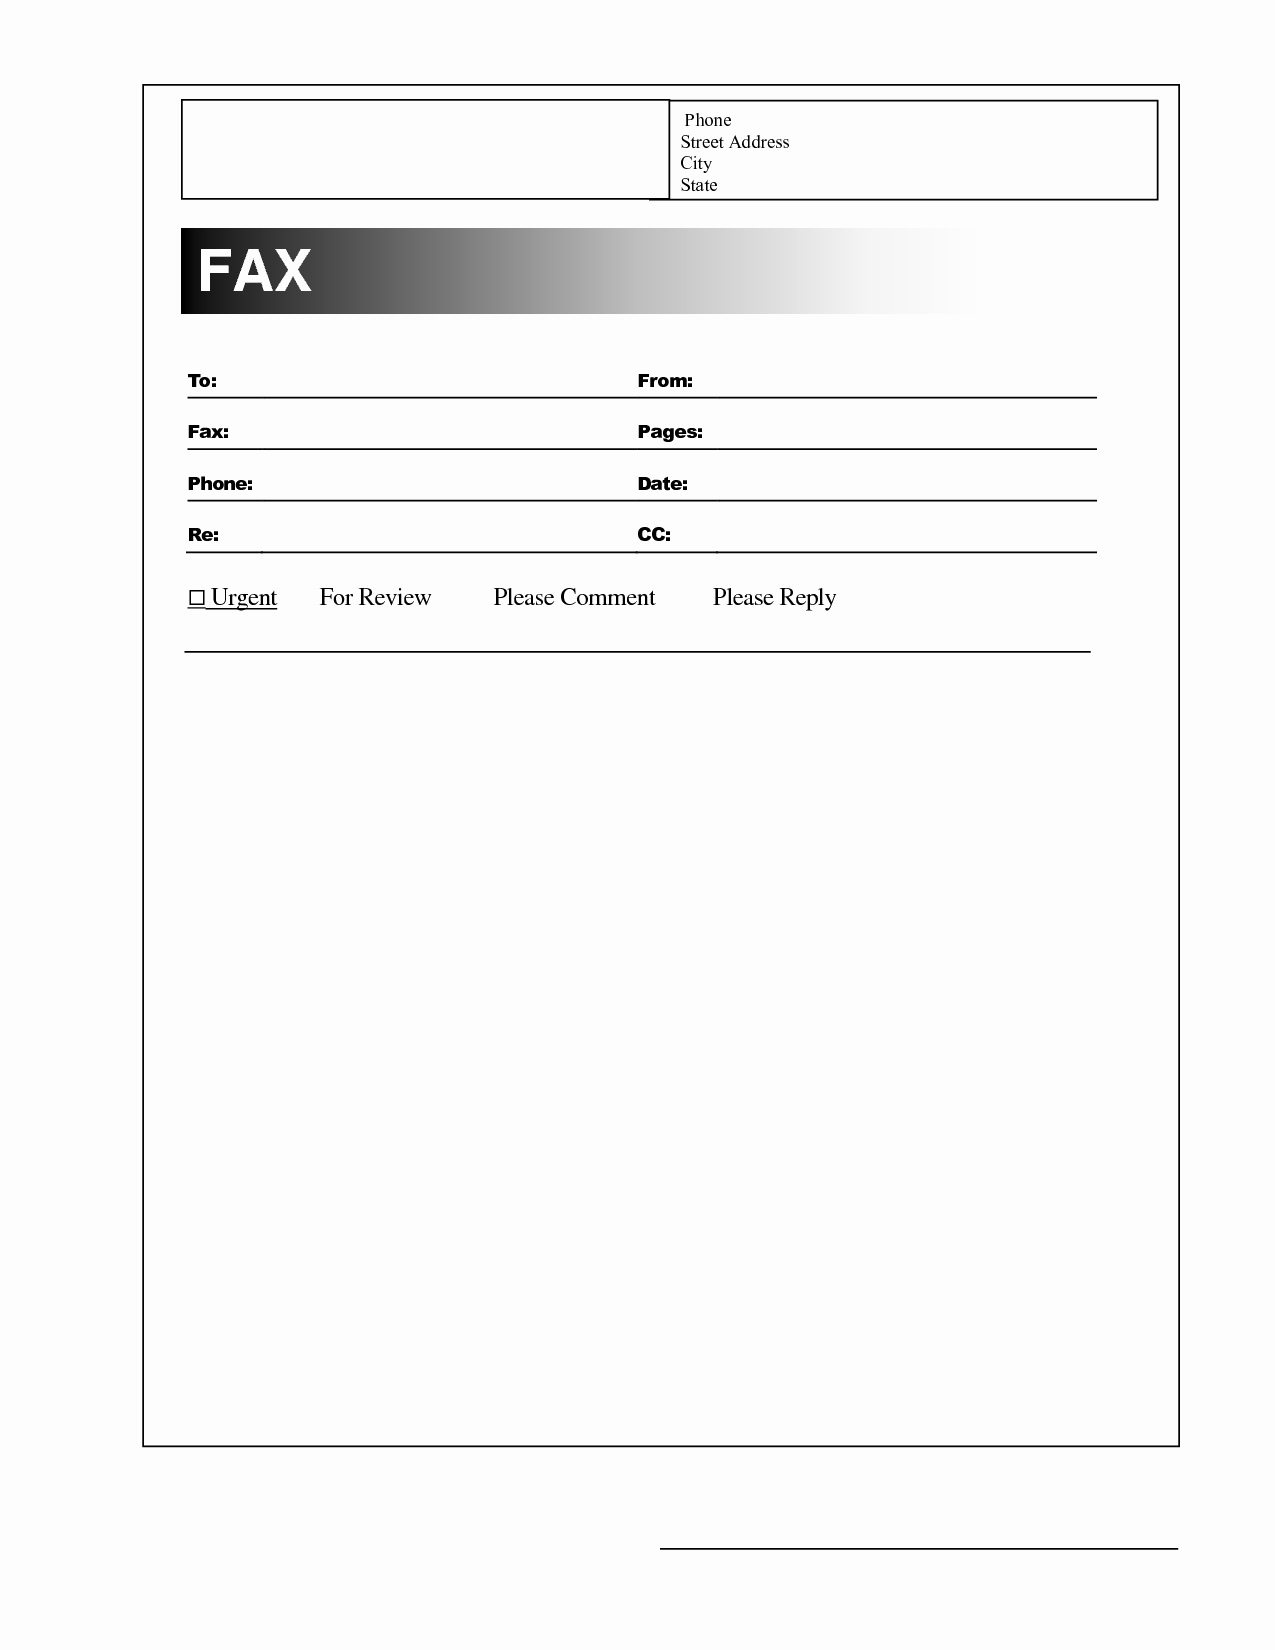 Fax Cover Sheet Pdf format Unique Best S Of Blank Fax Cover Sheet Blank Fax Cover